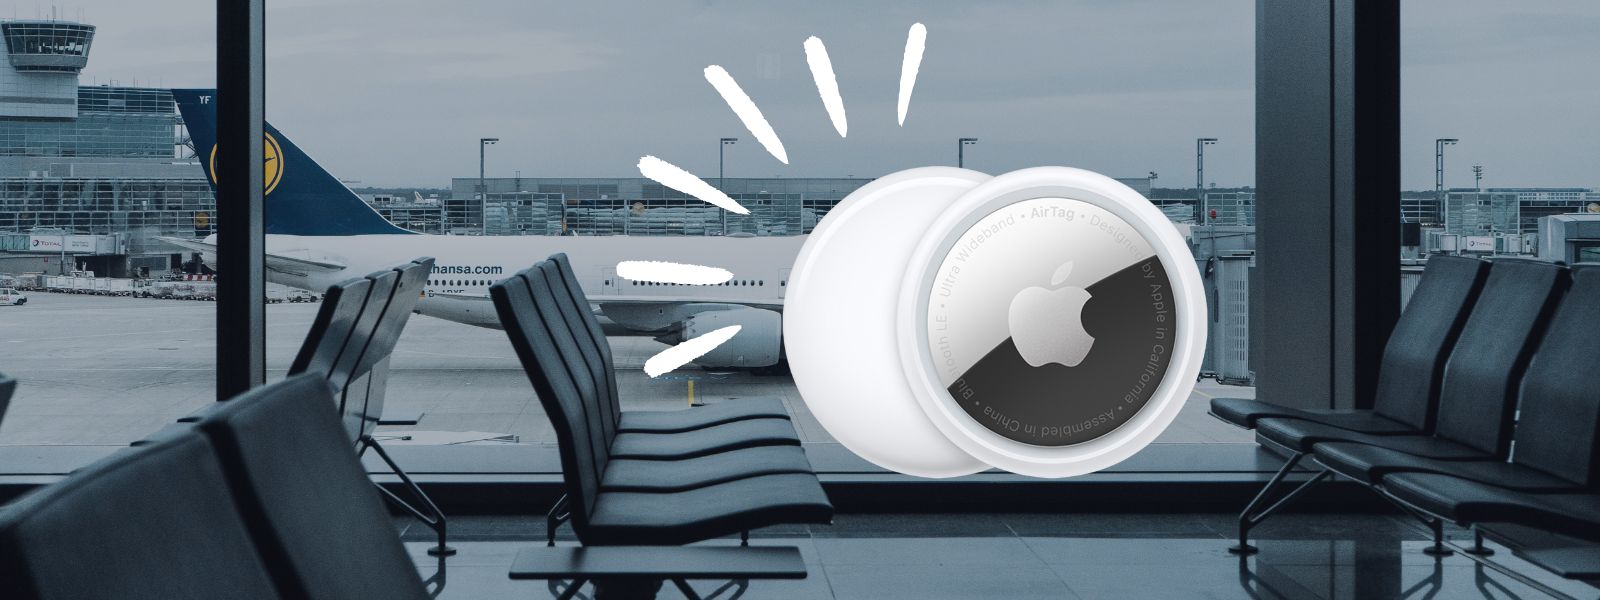 Bagages : les AirTags d'Apple sont-ils autorisés à bord des avions ?